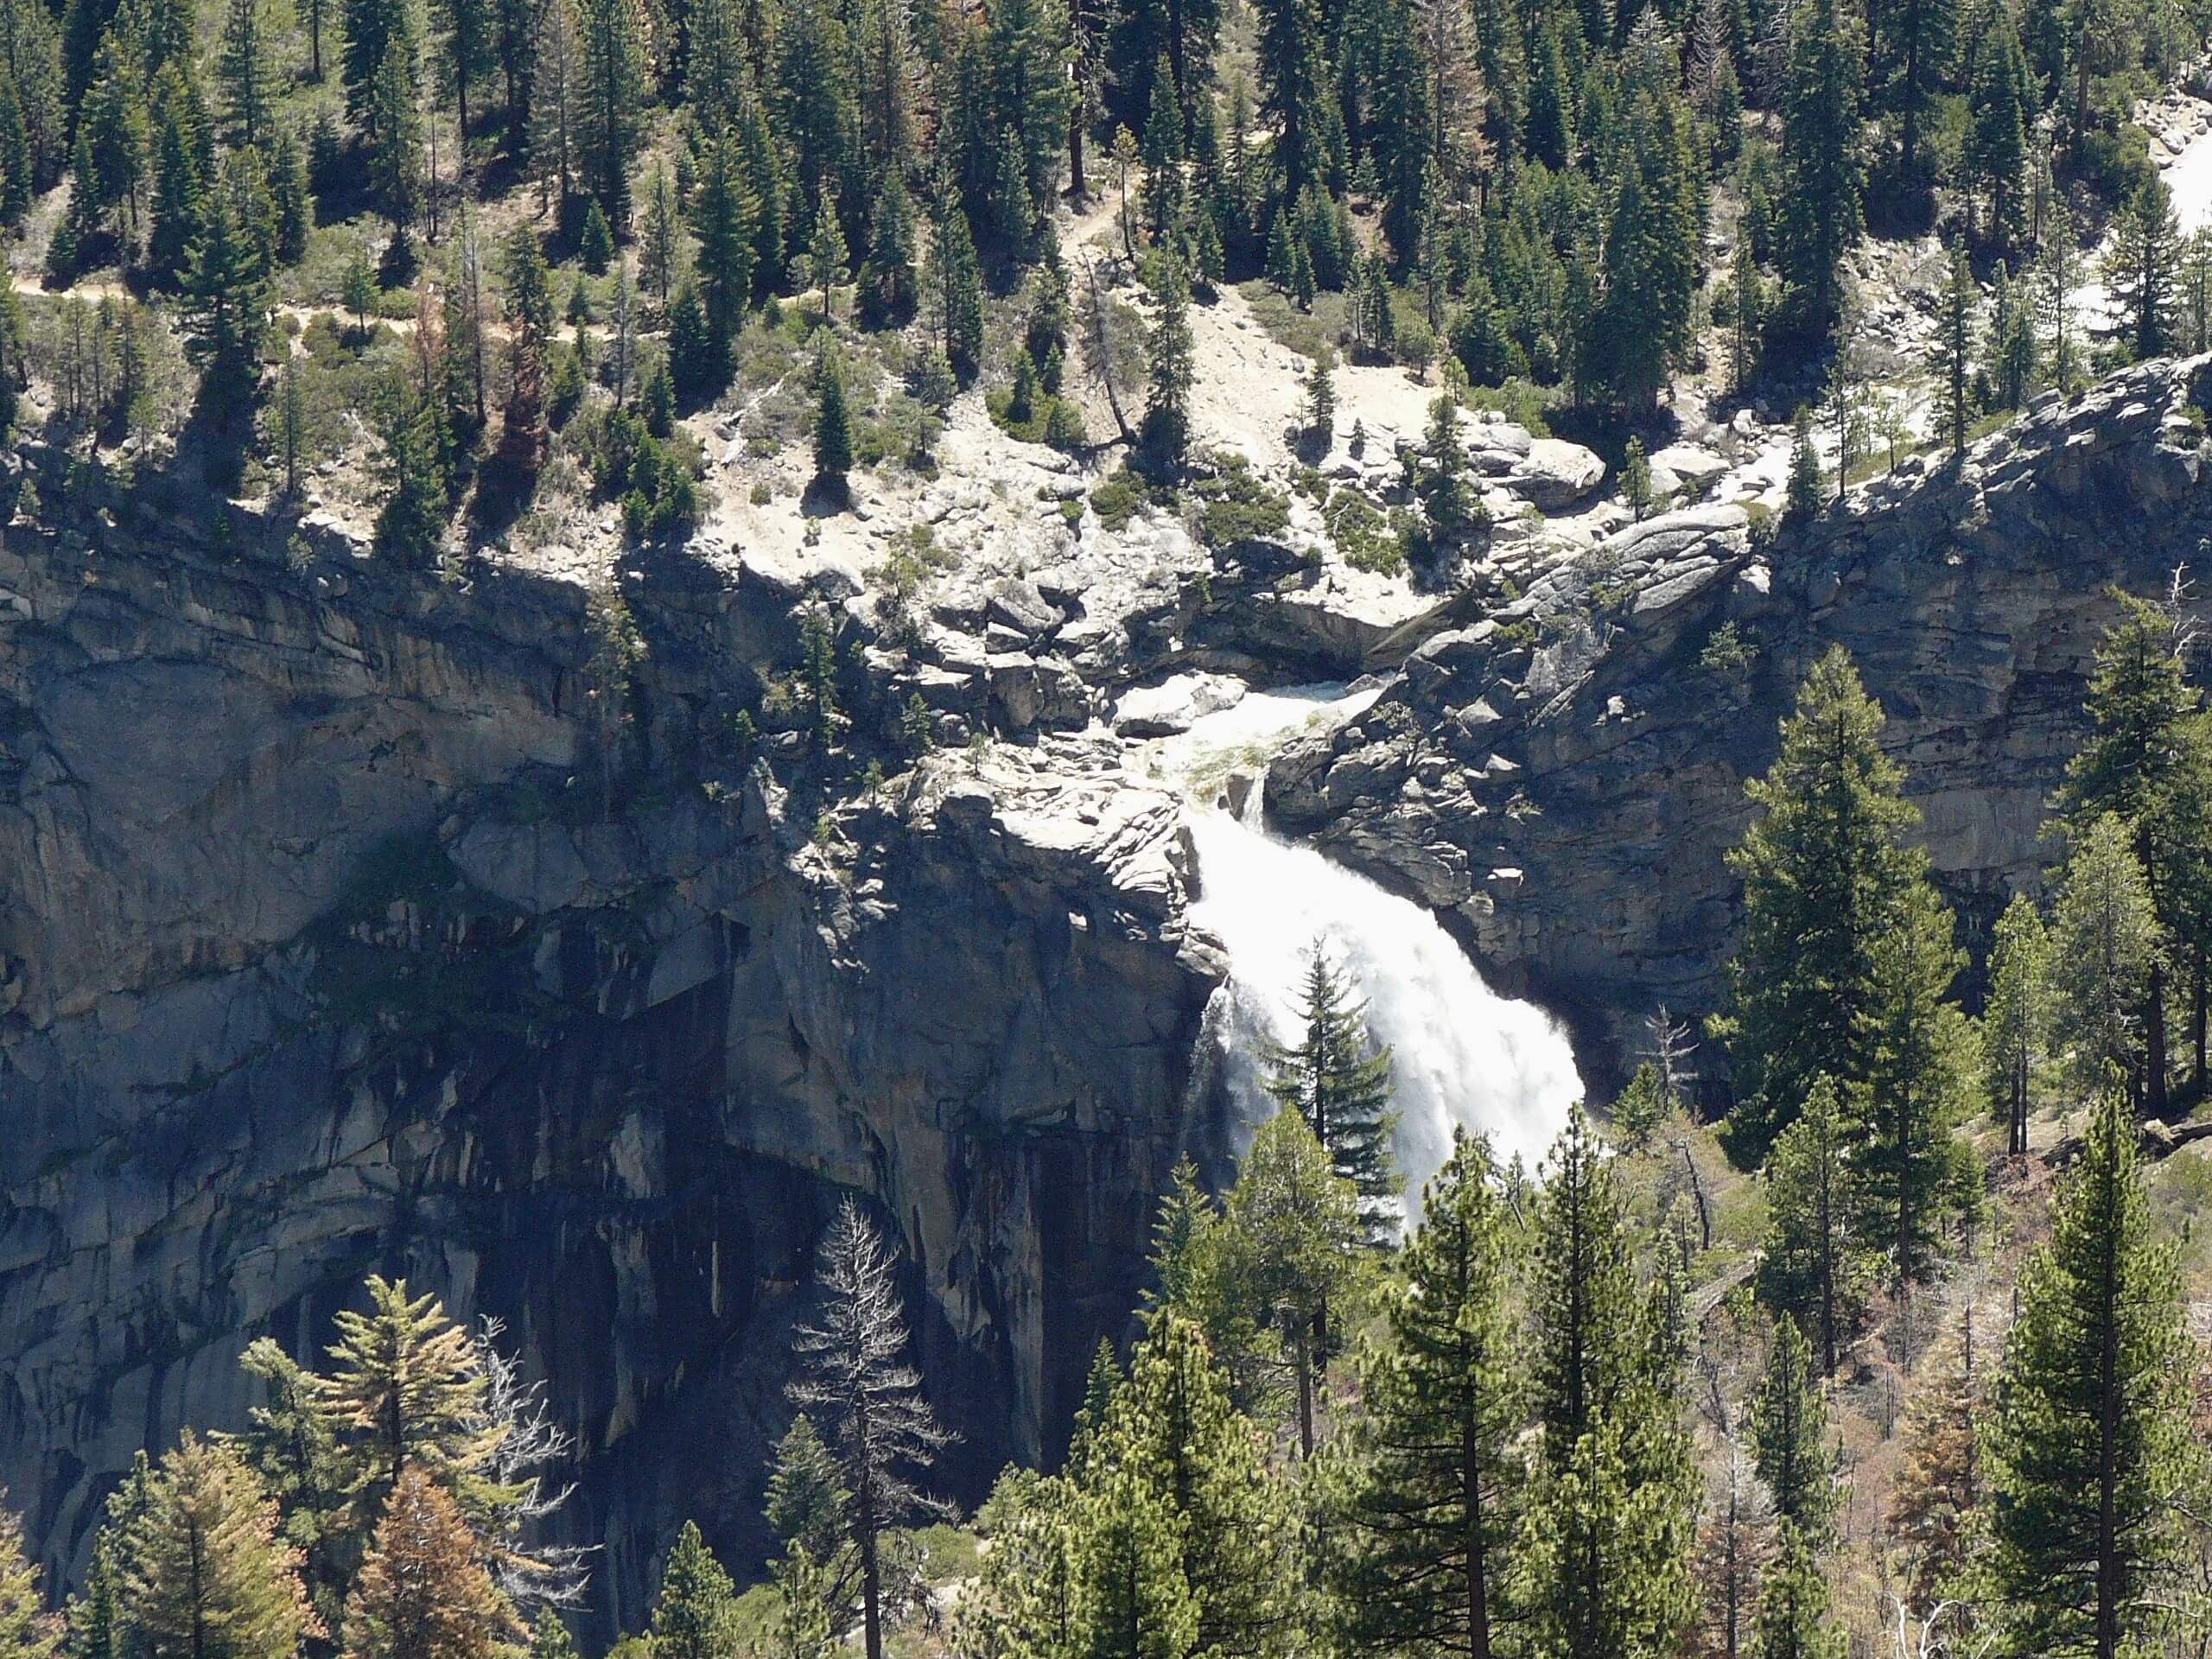 Illilouette Falls via Panorama Trail